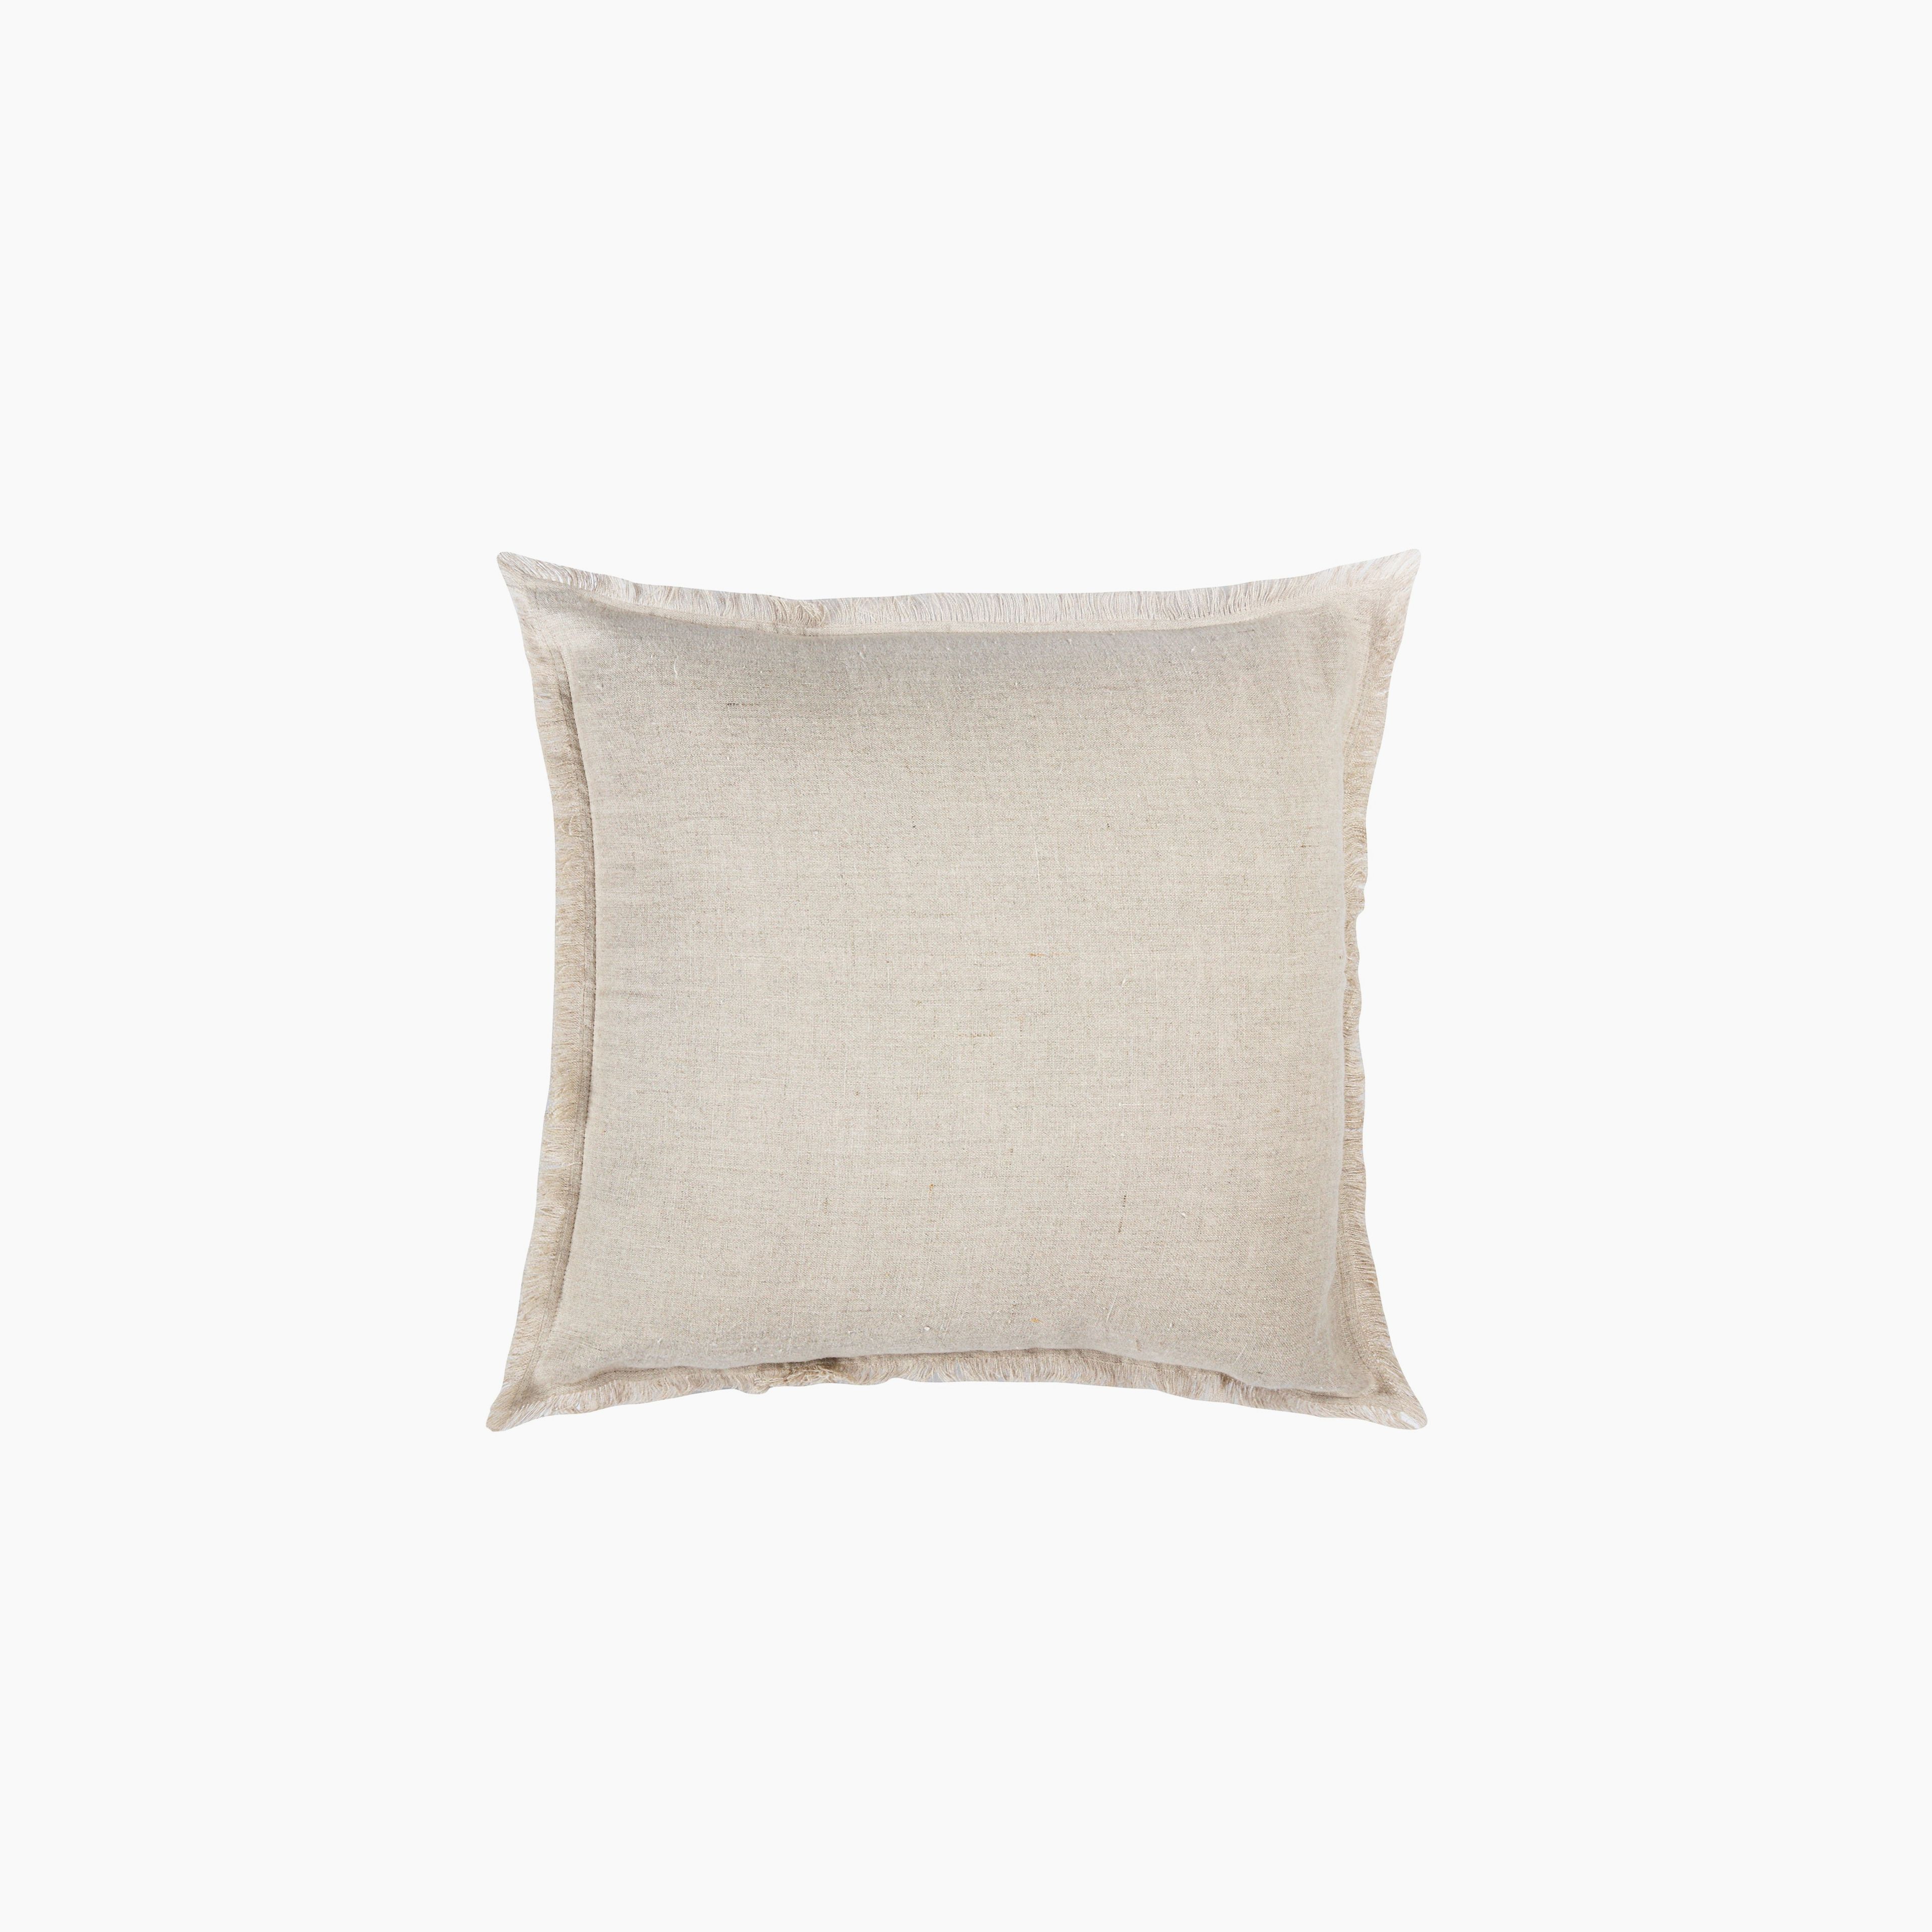 Beige So Soft Linen Pillows